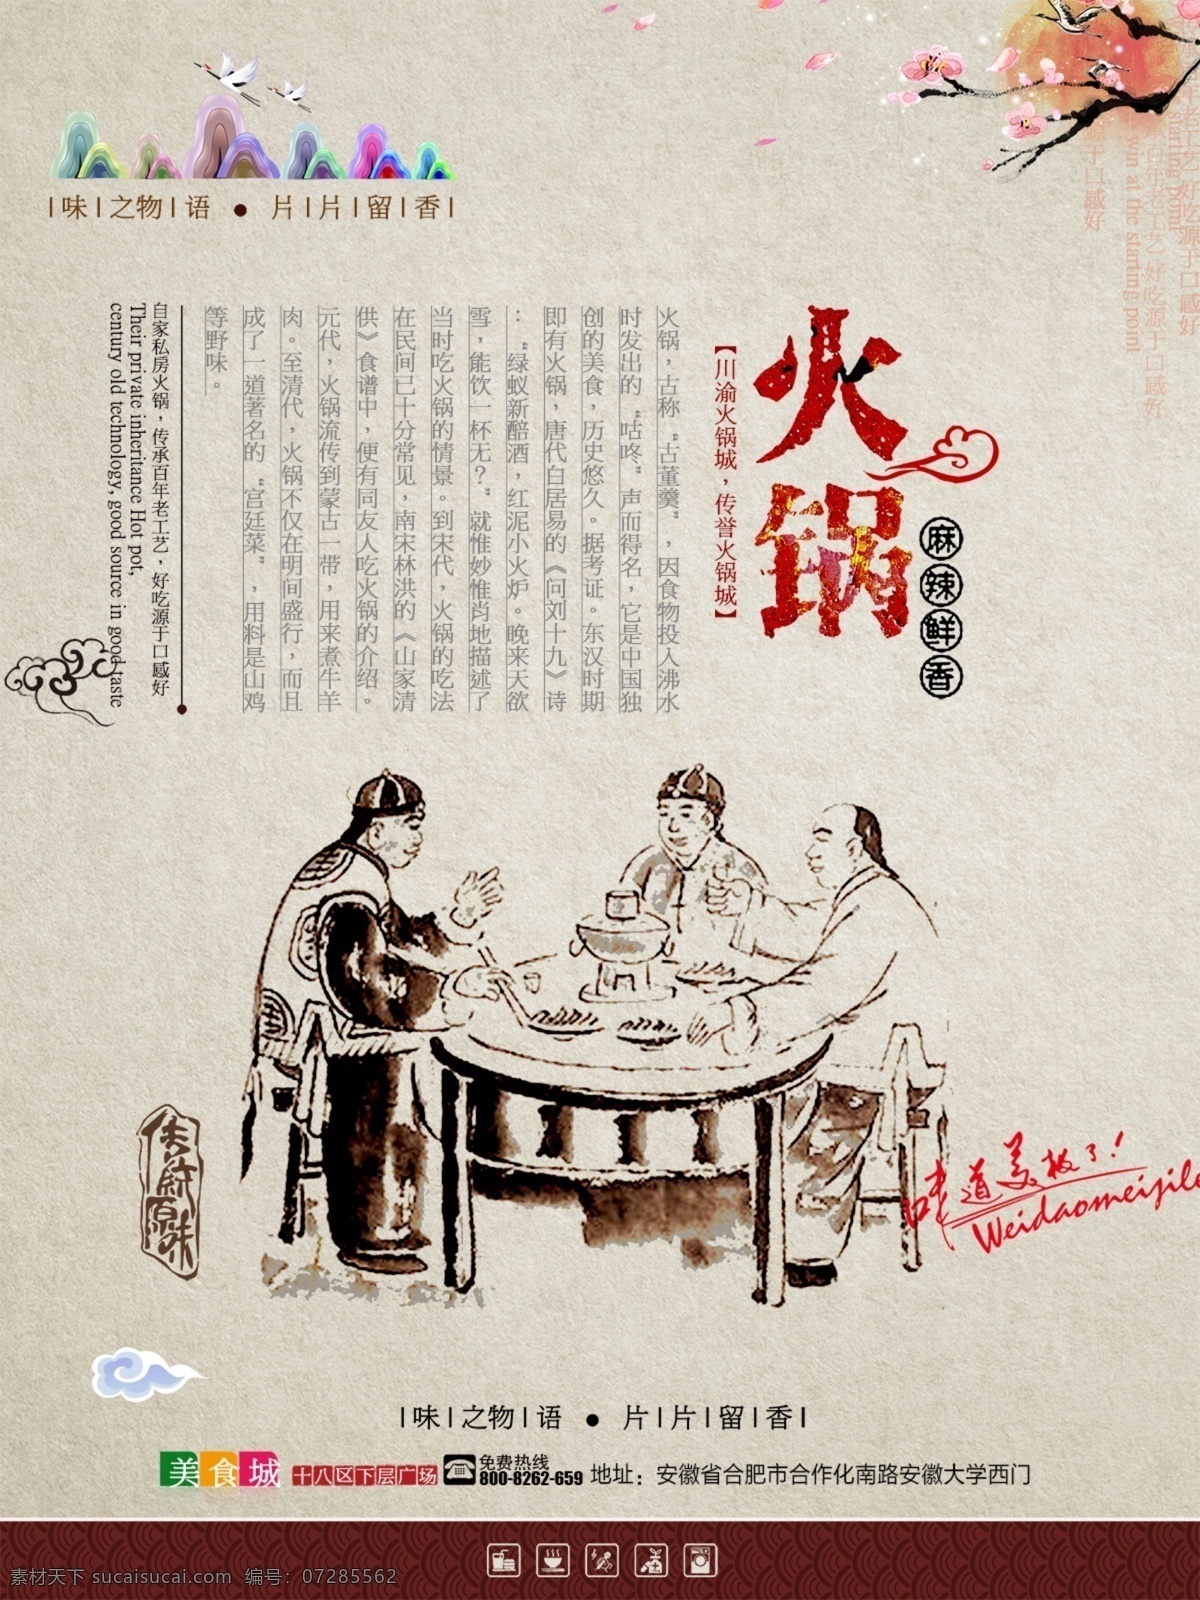 中式 传统 复古 火锅 美食文化 中国 风 海报 文化 宣传海报 水墨火锅图片 插画图片 灰色